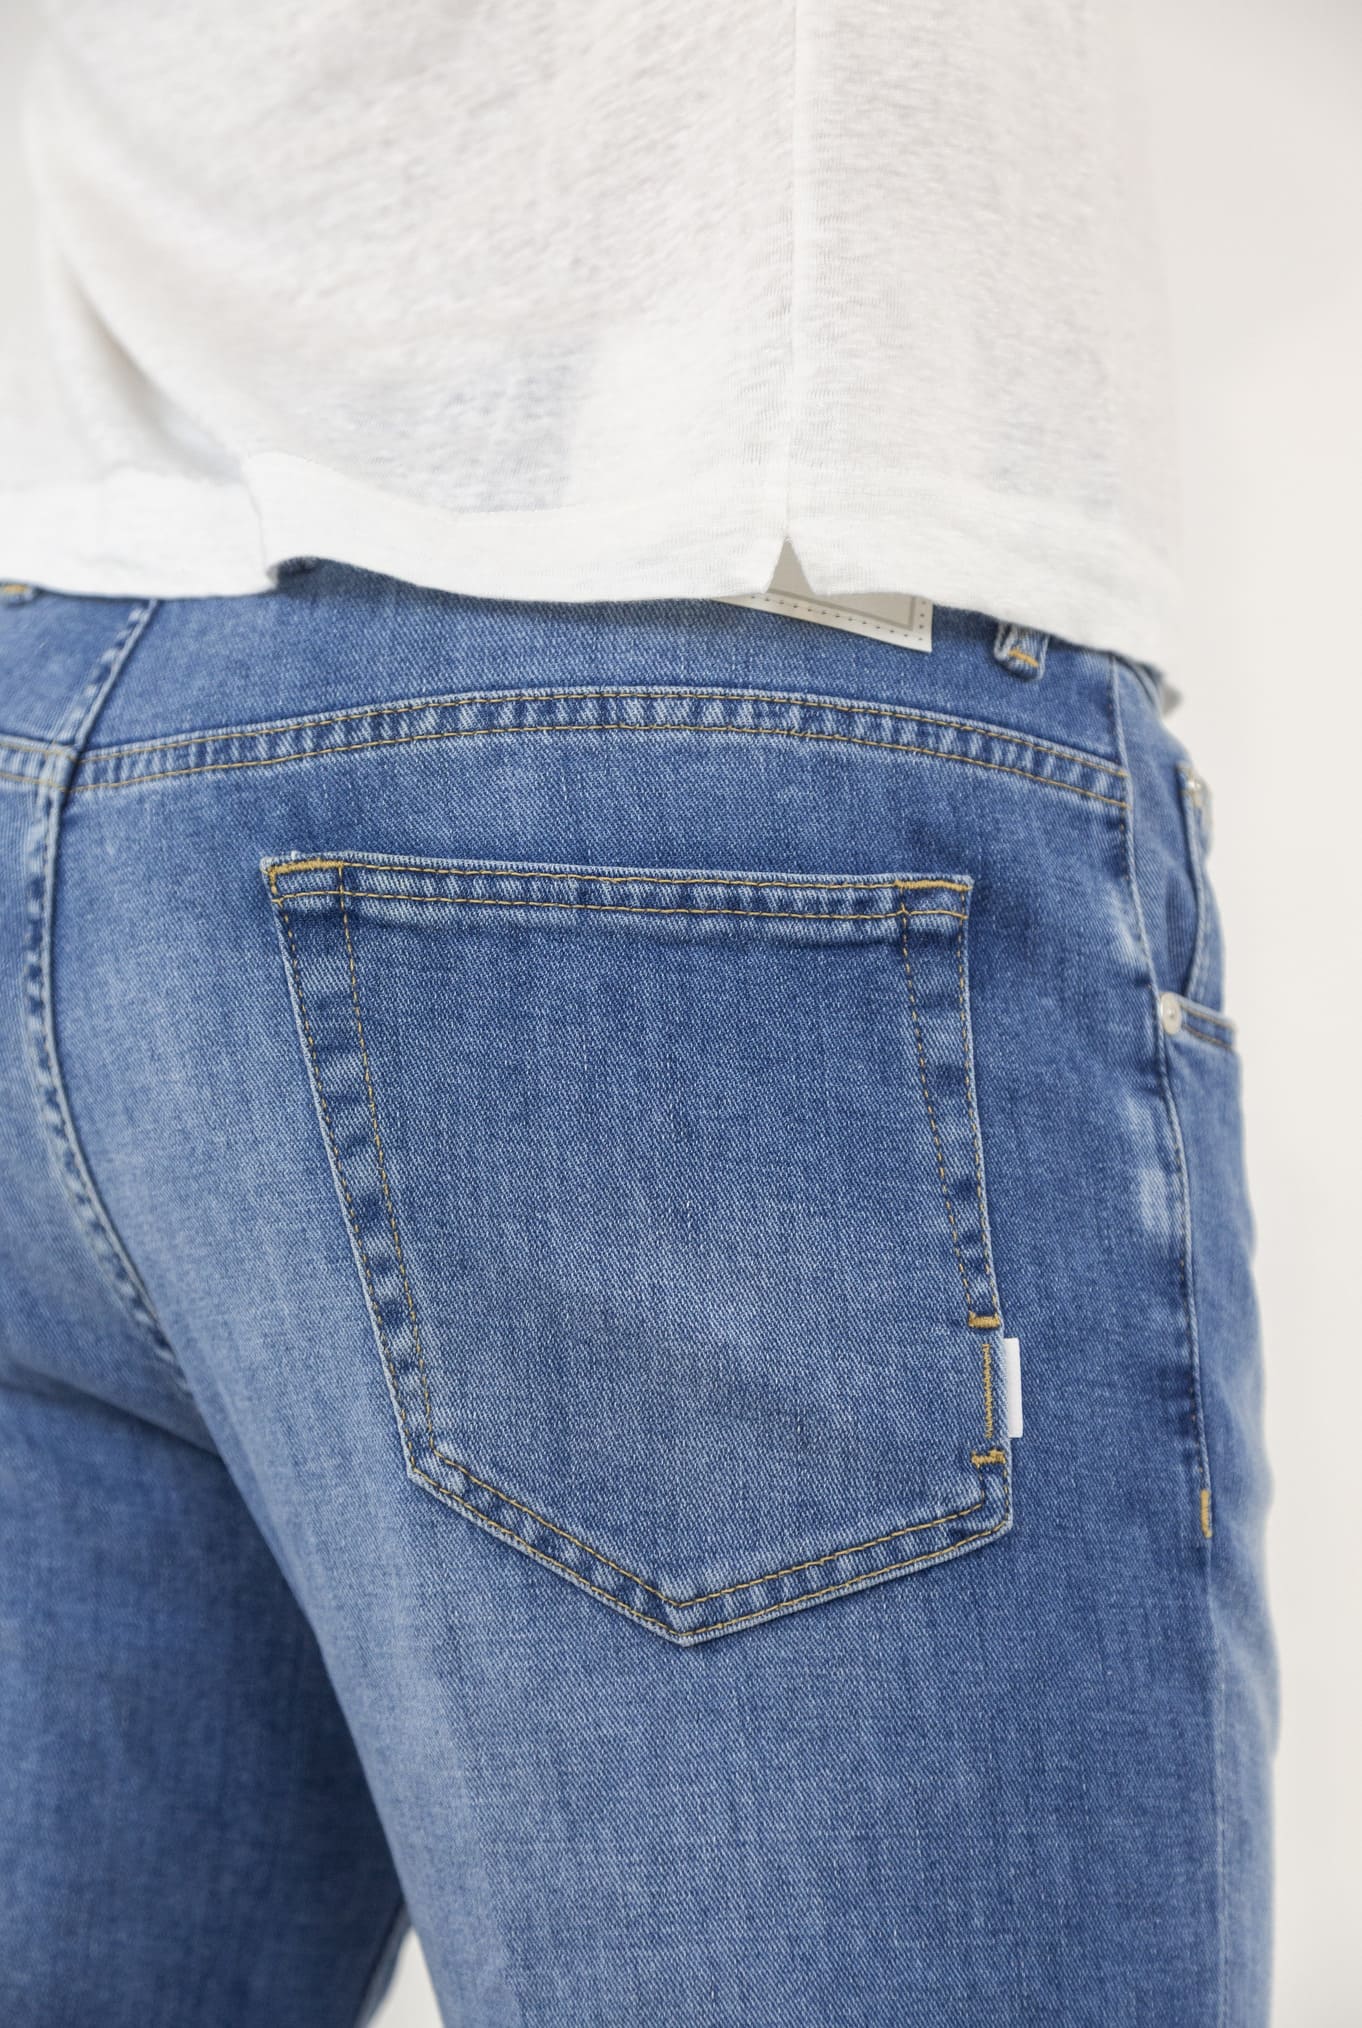 PT Jeans in Denim Stretch col. Medio